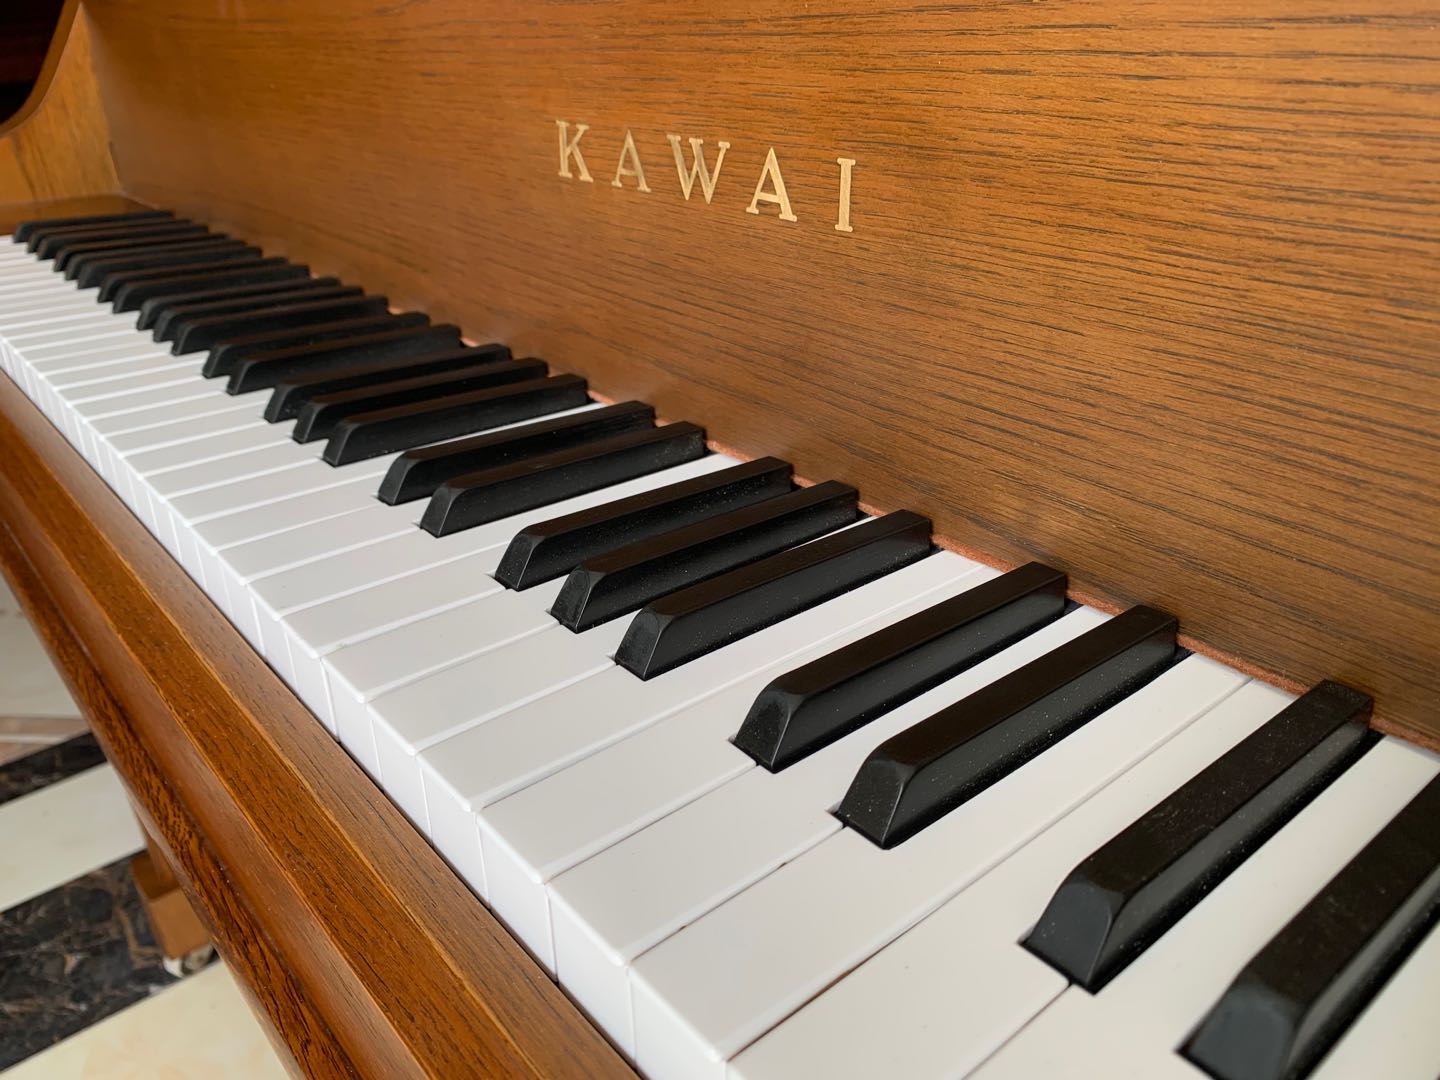 钢琴 日本原装进口卡瓦伊kawai 练习考级演奏 kl7035